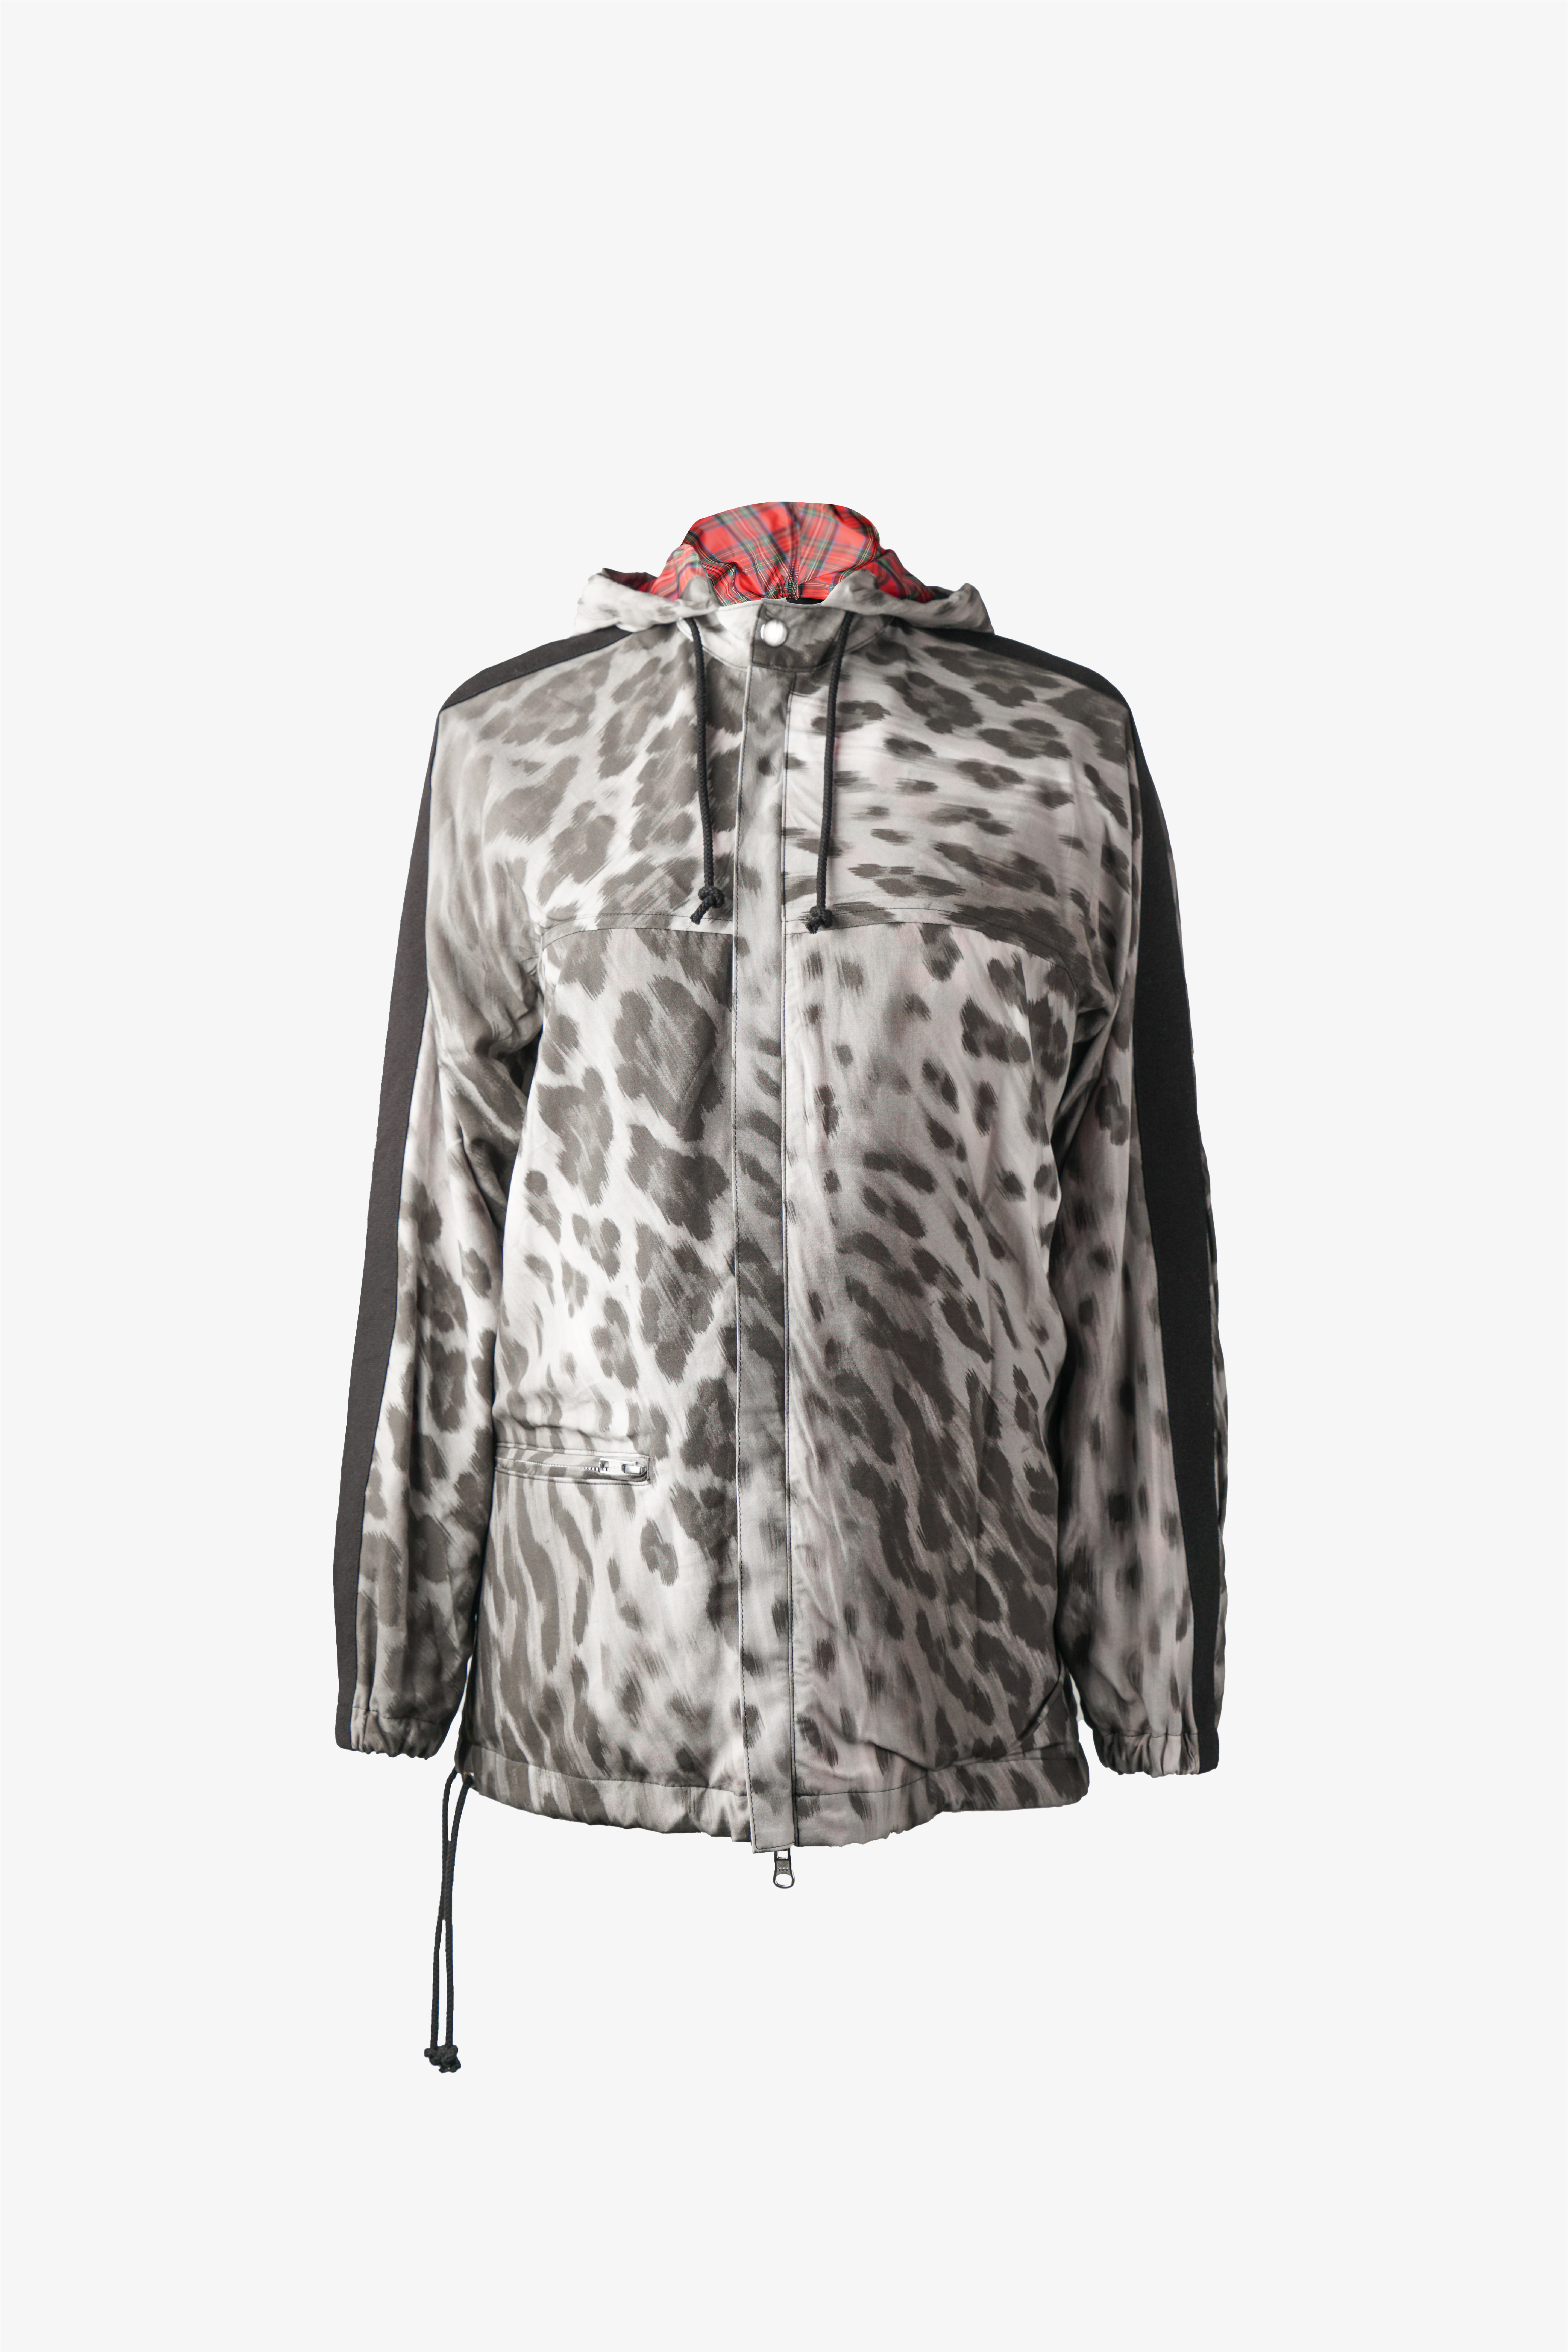 Selectshop FRAME - COMME DES GARÇONS TRICOT Jacket Outerwear Dubai